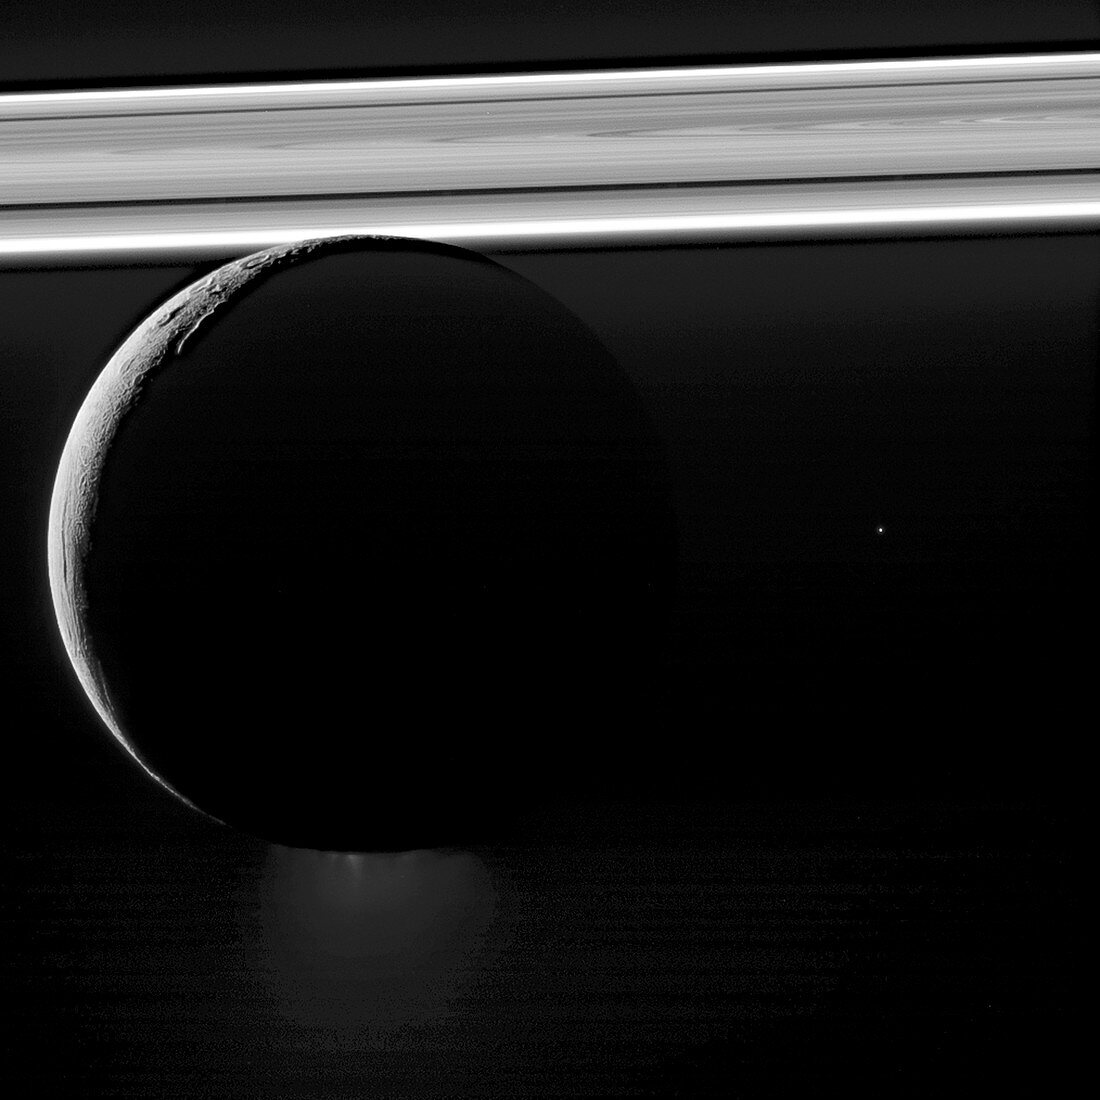 Enceladus, Moon of Saturn